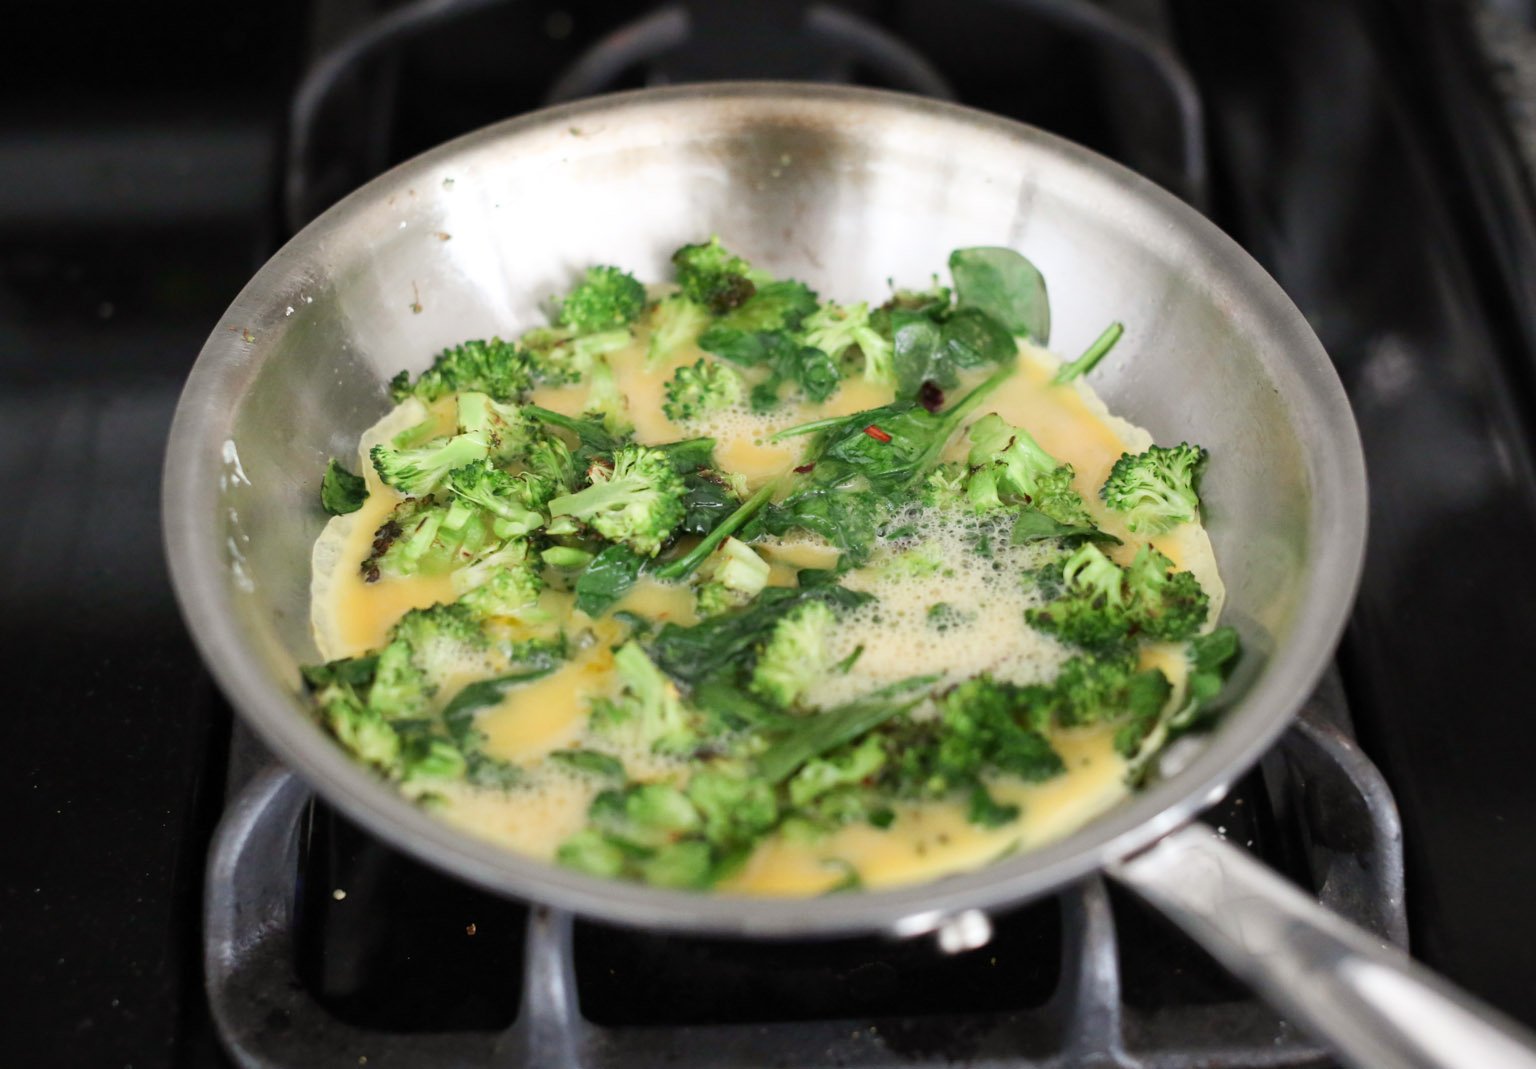 Personal Broccoli Parm Frittata